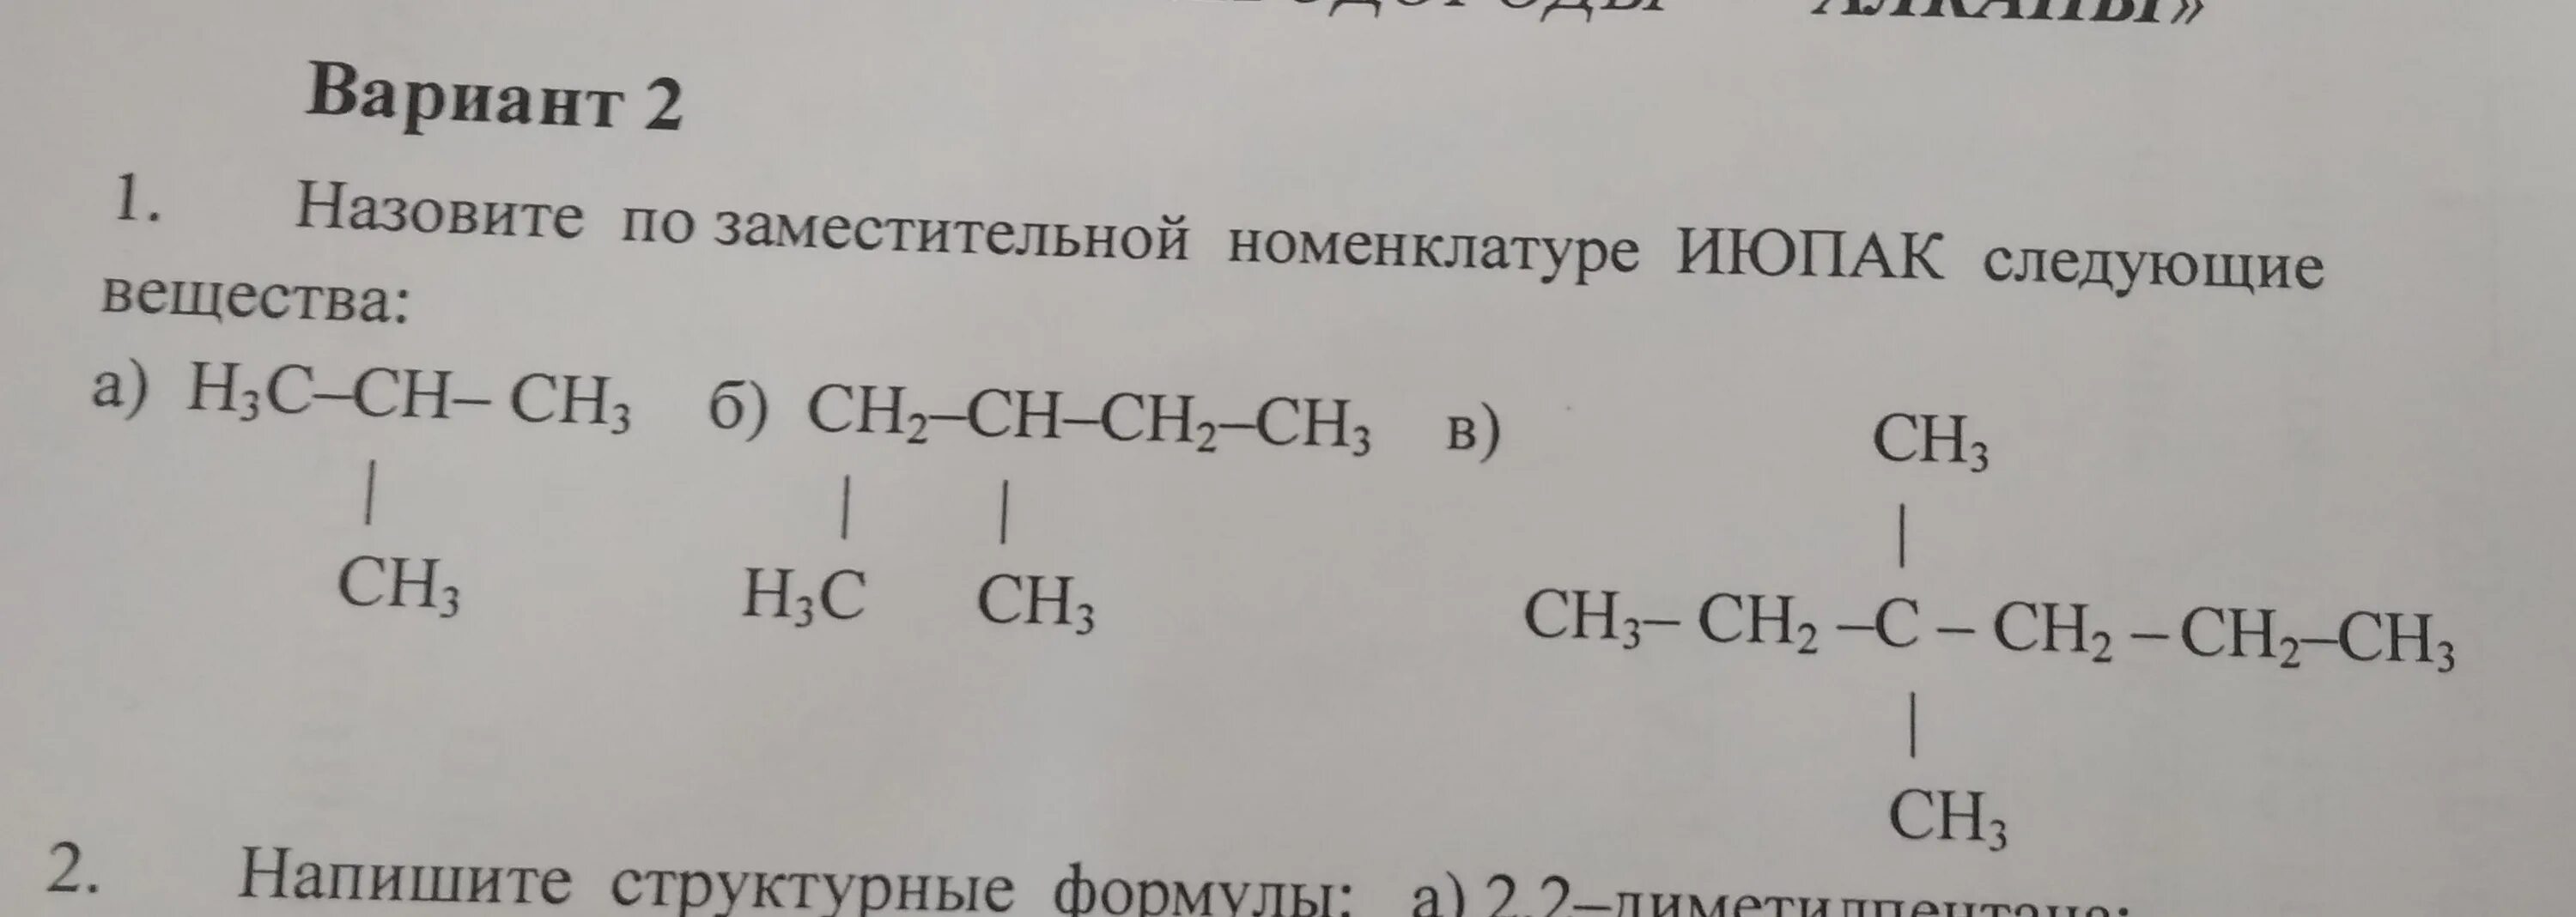 Назовите по номенклатуре IUPAC следующие вещества h3c-ch2-Ch-Ch-ch2-ch2ch3. Назовите соединения по заместительной номенклатуре. Назовите по номенклатуре ИЮПАК следующие вещества h3c-Ch-ch2-ch2-ch2-ch2-ch3. Ch c-ch2-ch3 по номенклатуре ИЮПАК.